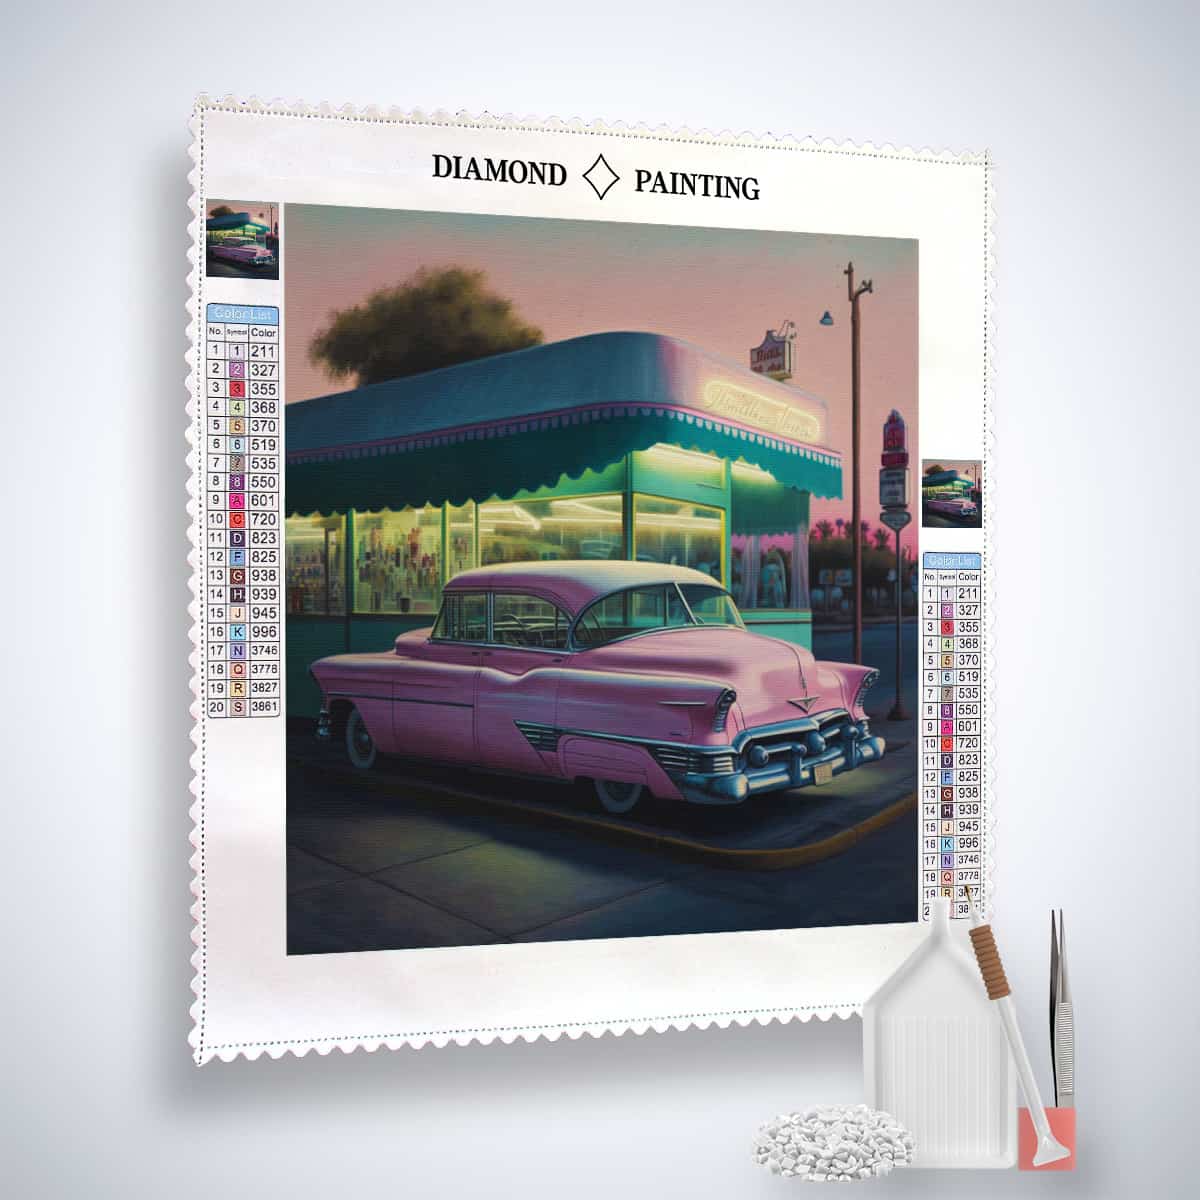 Diamond Painting - Nostalgische Tankstelle und Klassiker - gedruckt in Ultra-HD - Auto, Neu eingetroffen, Quadratisch, Retro, Route 66